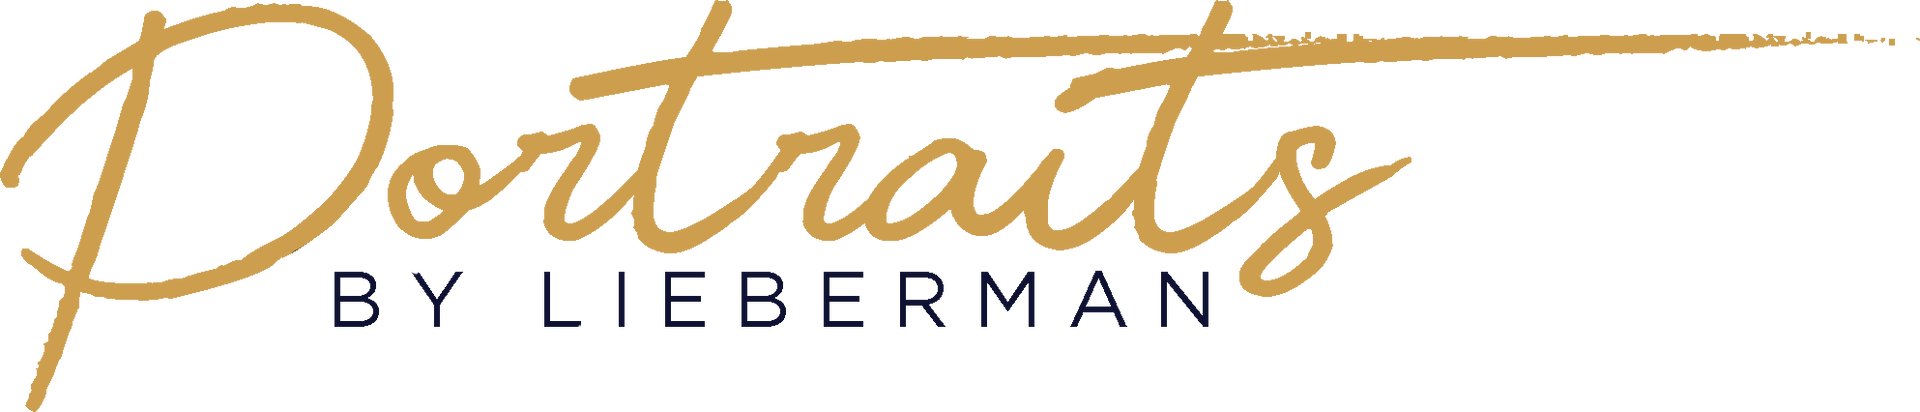 Portraits By Lieberman Logo